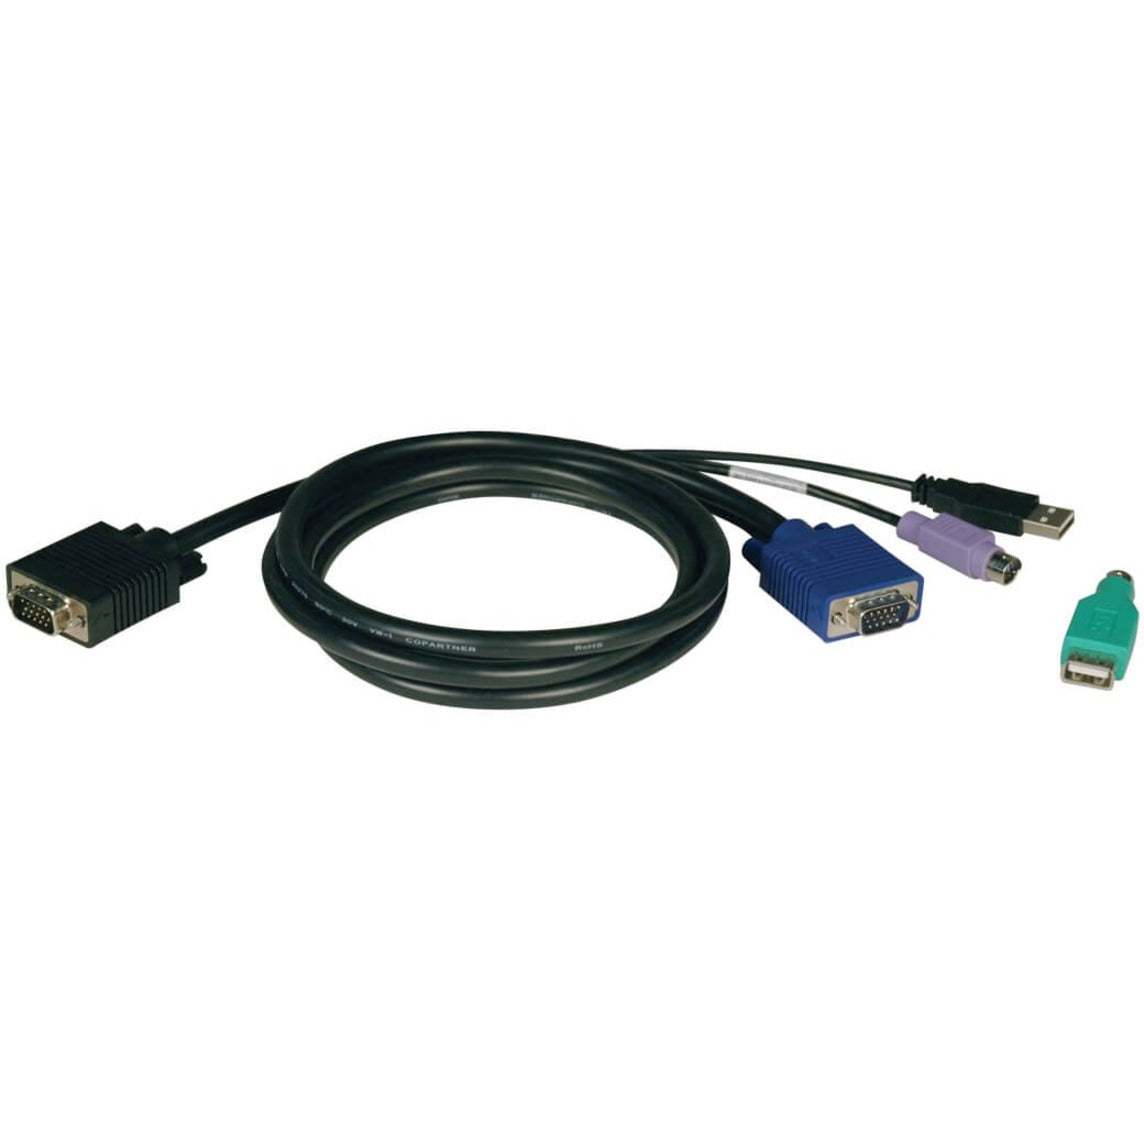 Tripp Lite P780-015 KVM Cable Kit, 15FT PS2/USB for B042 Series KVM Switches